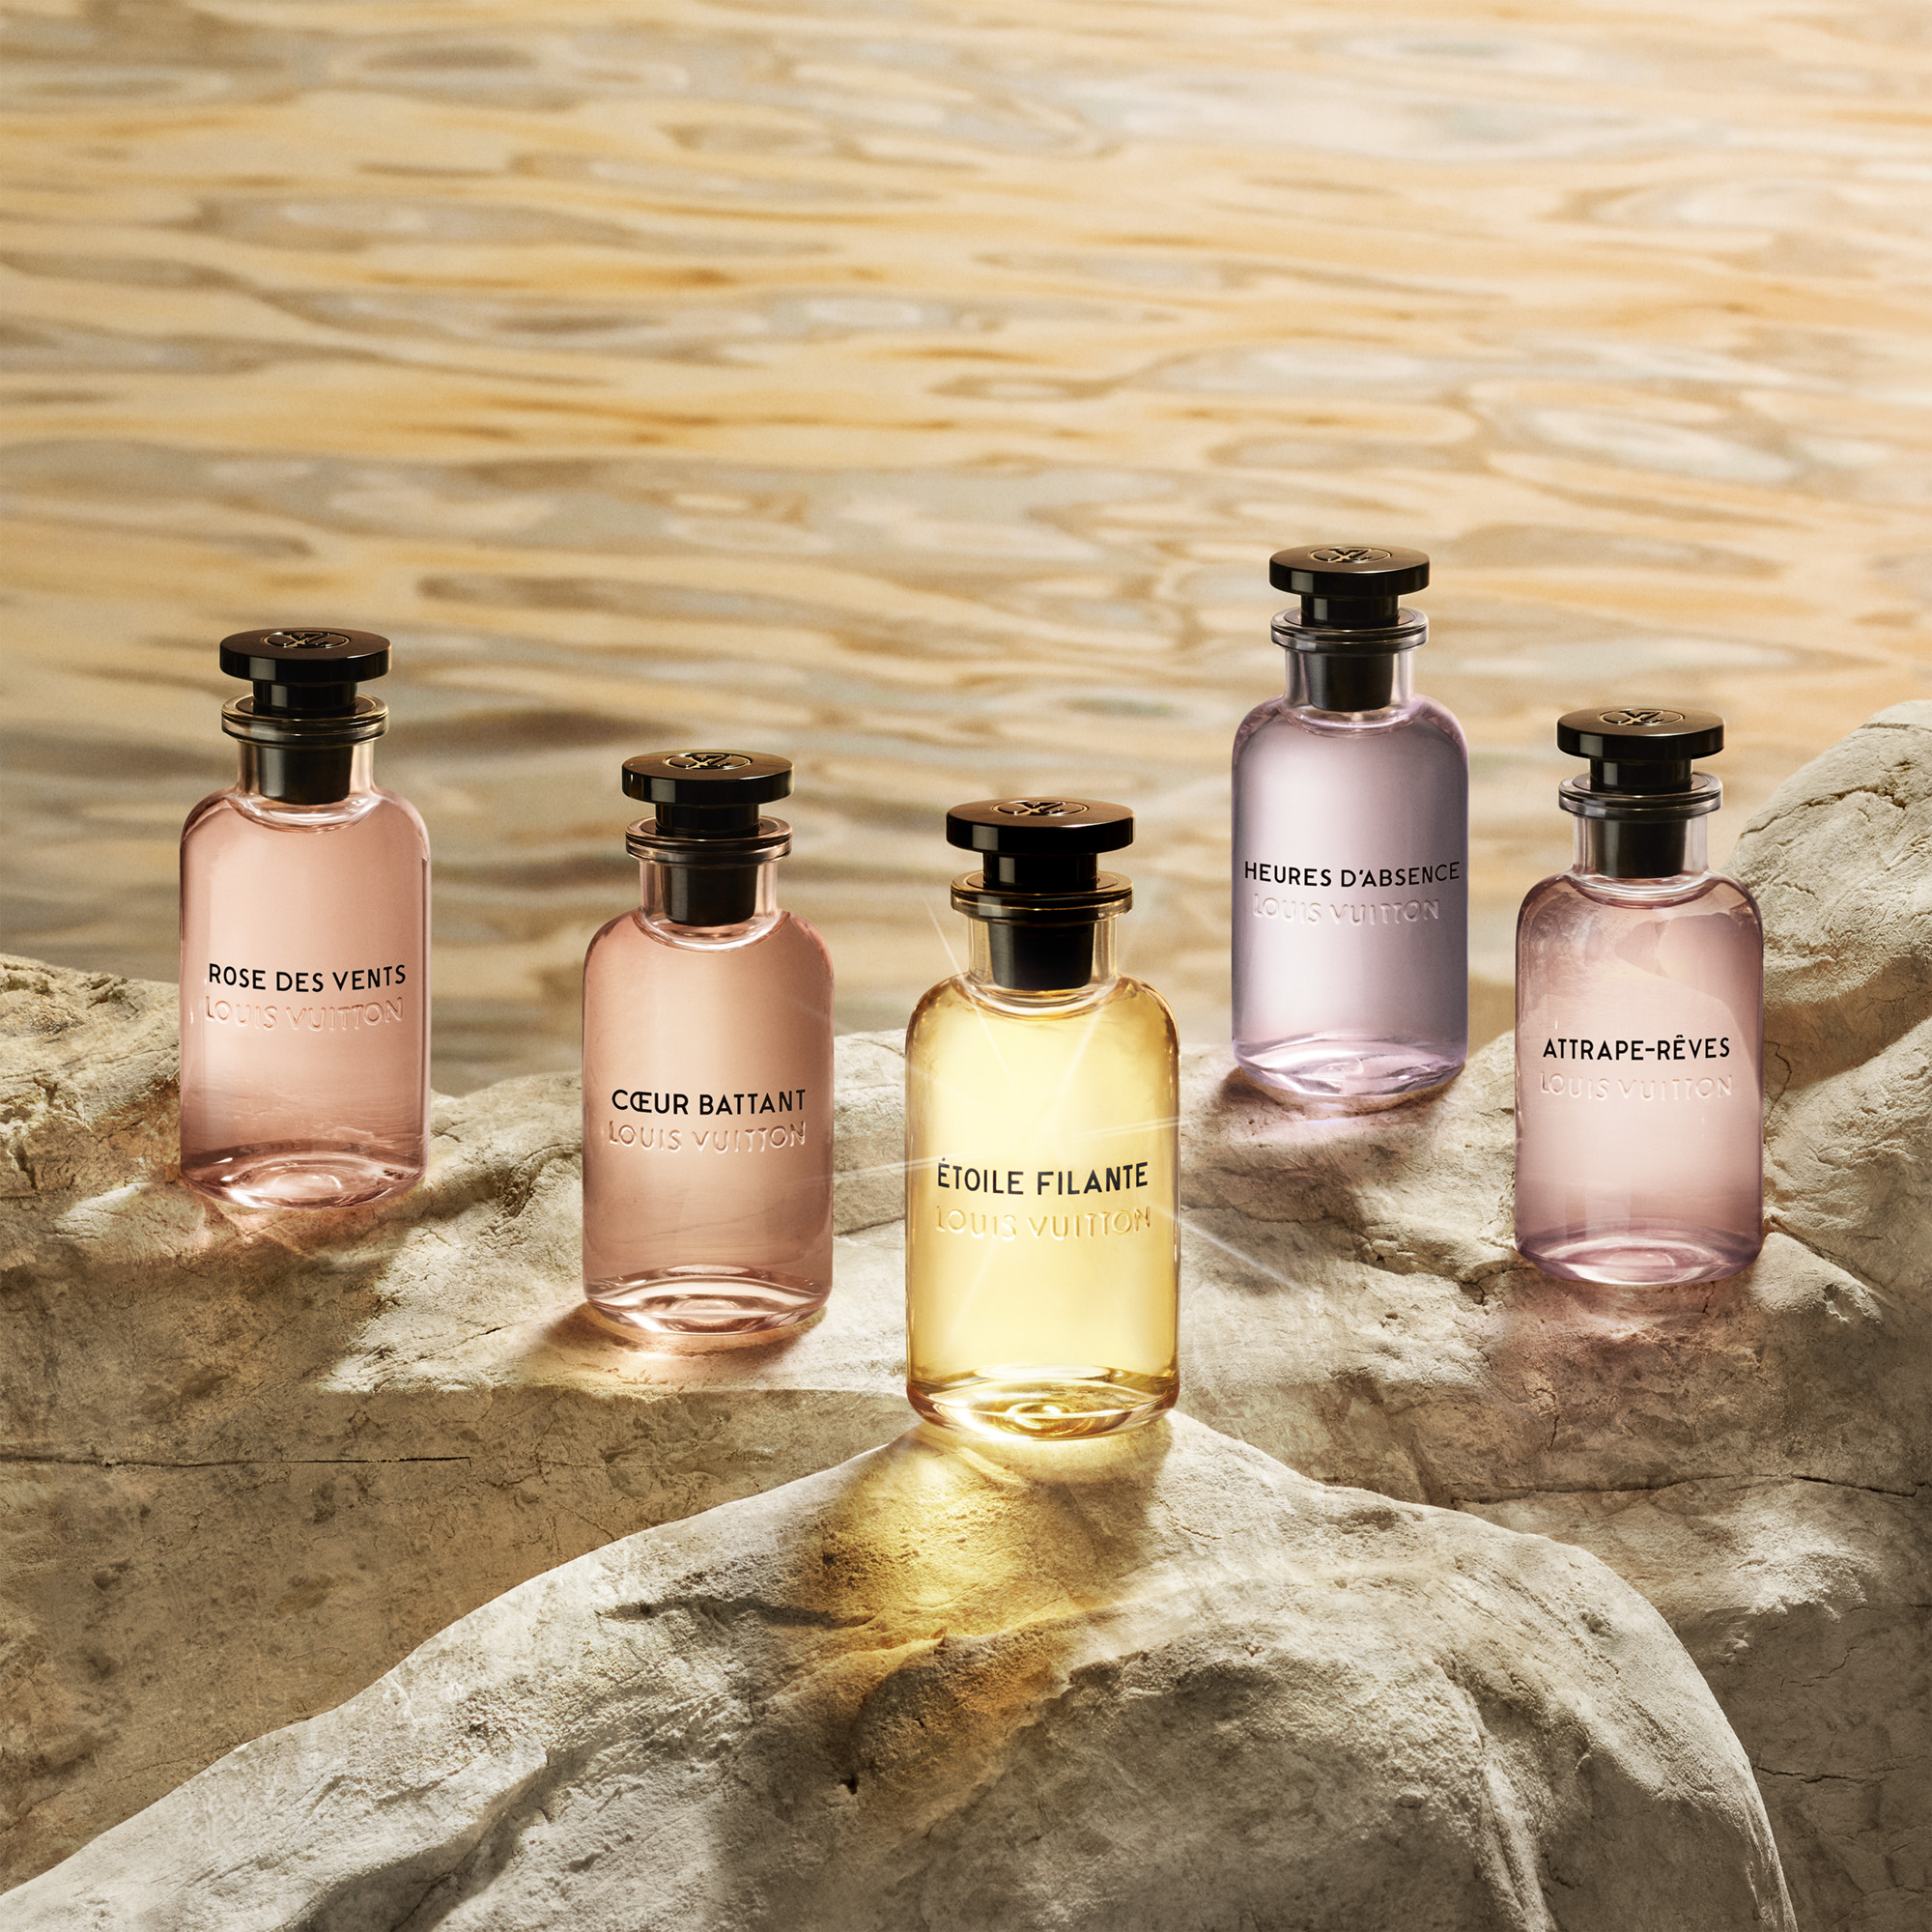 Shop Louis Vuitton MONOGRAM Collaboration Perfumes & Fragrances by Punahou